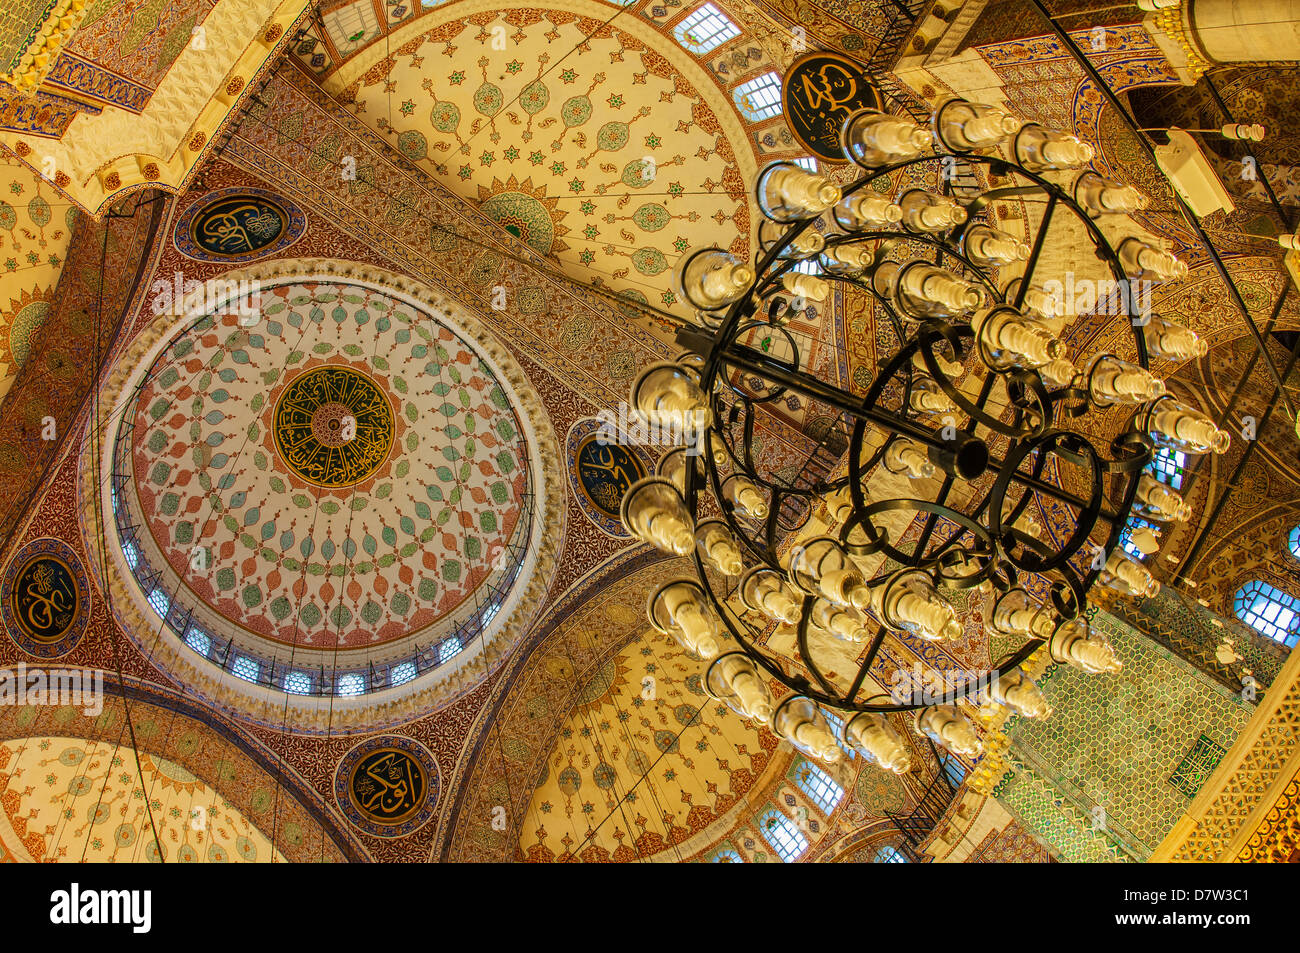 Yeni Cami ou la nouvelle mosquée, dômes et coupoles, la vieille ville d'Istanbul, Turquie Banque D'Images